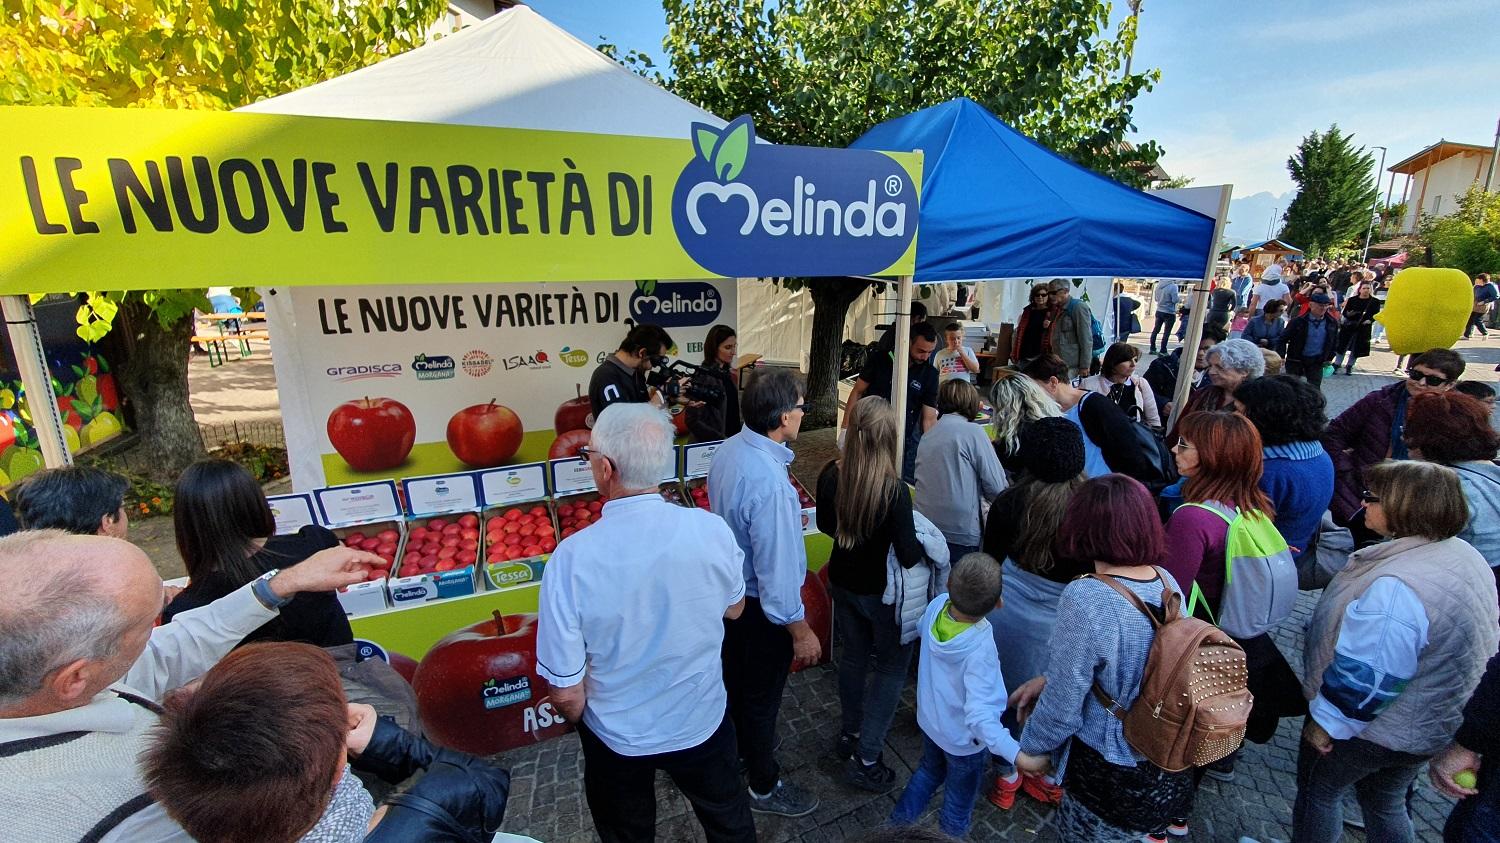 Anche la Provincia Autonoma di Trento crede nel progetto e lo sostiene con un importante contributo che abbatterà il costo di impianto delle singole piante avvantaggiando economicamente i frutticoltori.